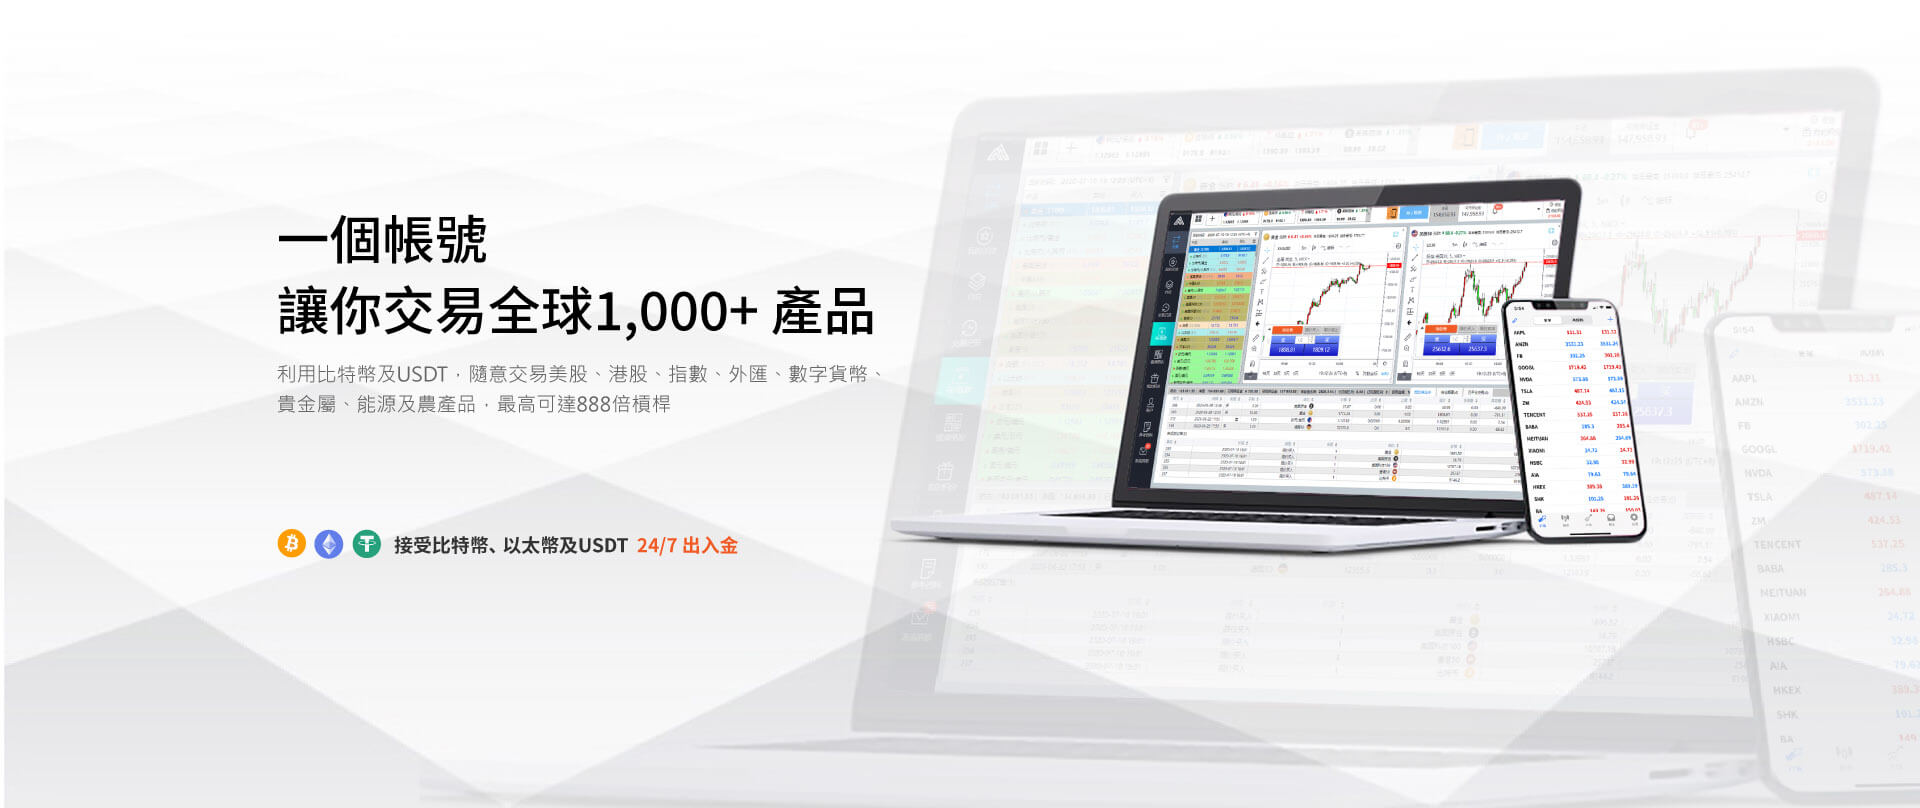 MT5中文交易平台